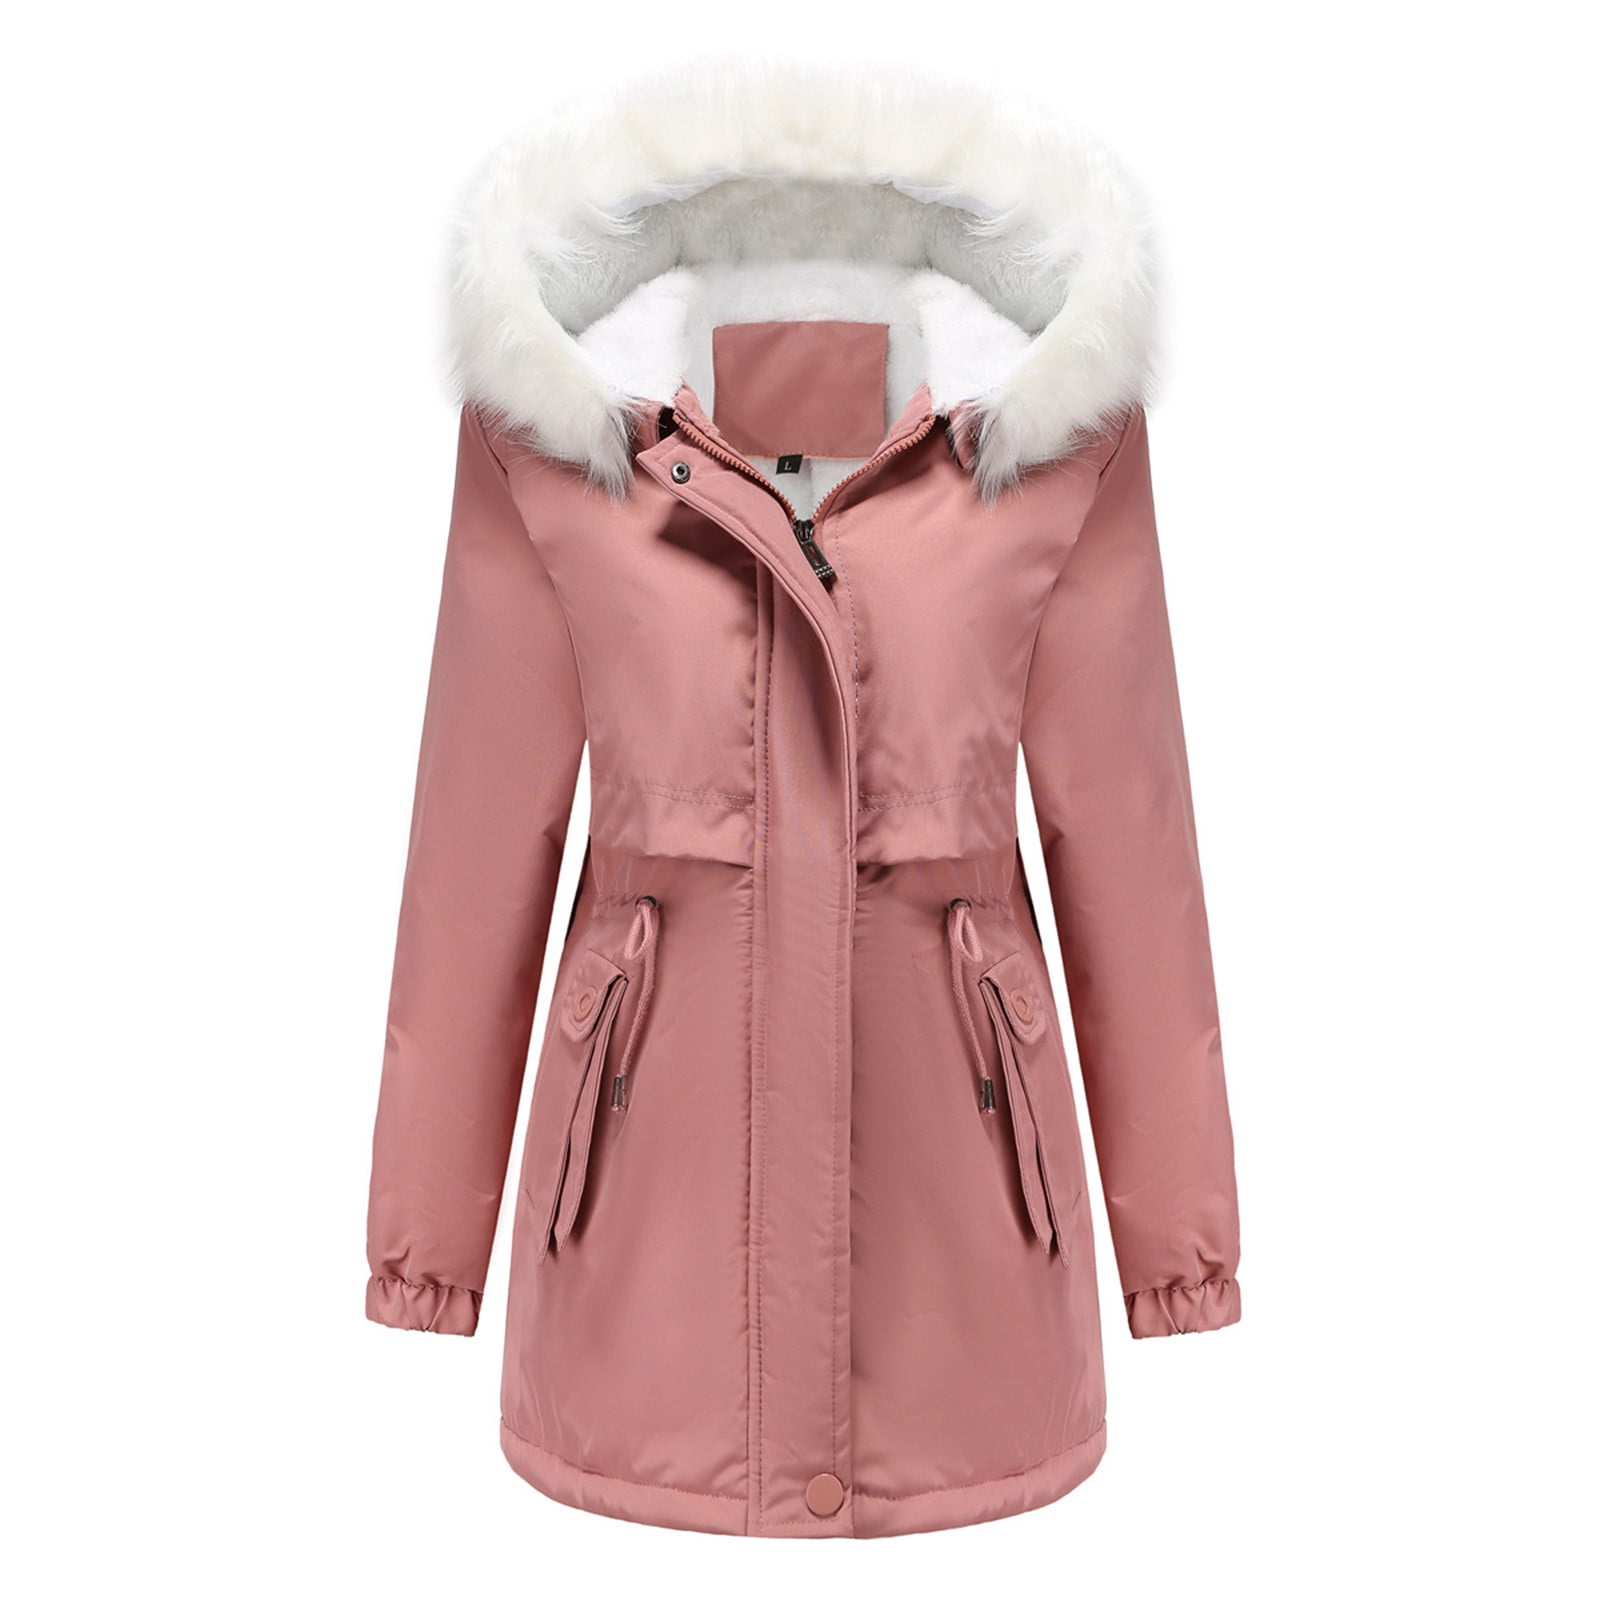 Olyvenn Deals Women - Casual Coat Long Sleeves Suit Style Leather Jacket  Women Winter Fall Long Sleeve Outwear Jackets for Women 2023 Trendy Pink 10